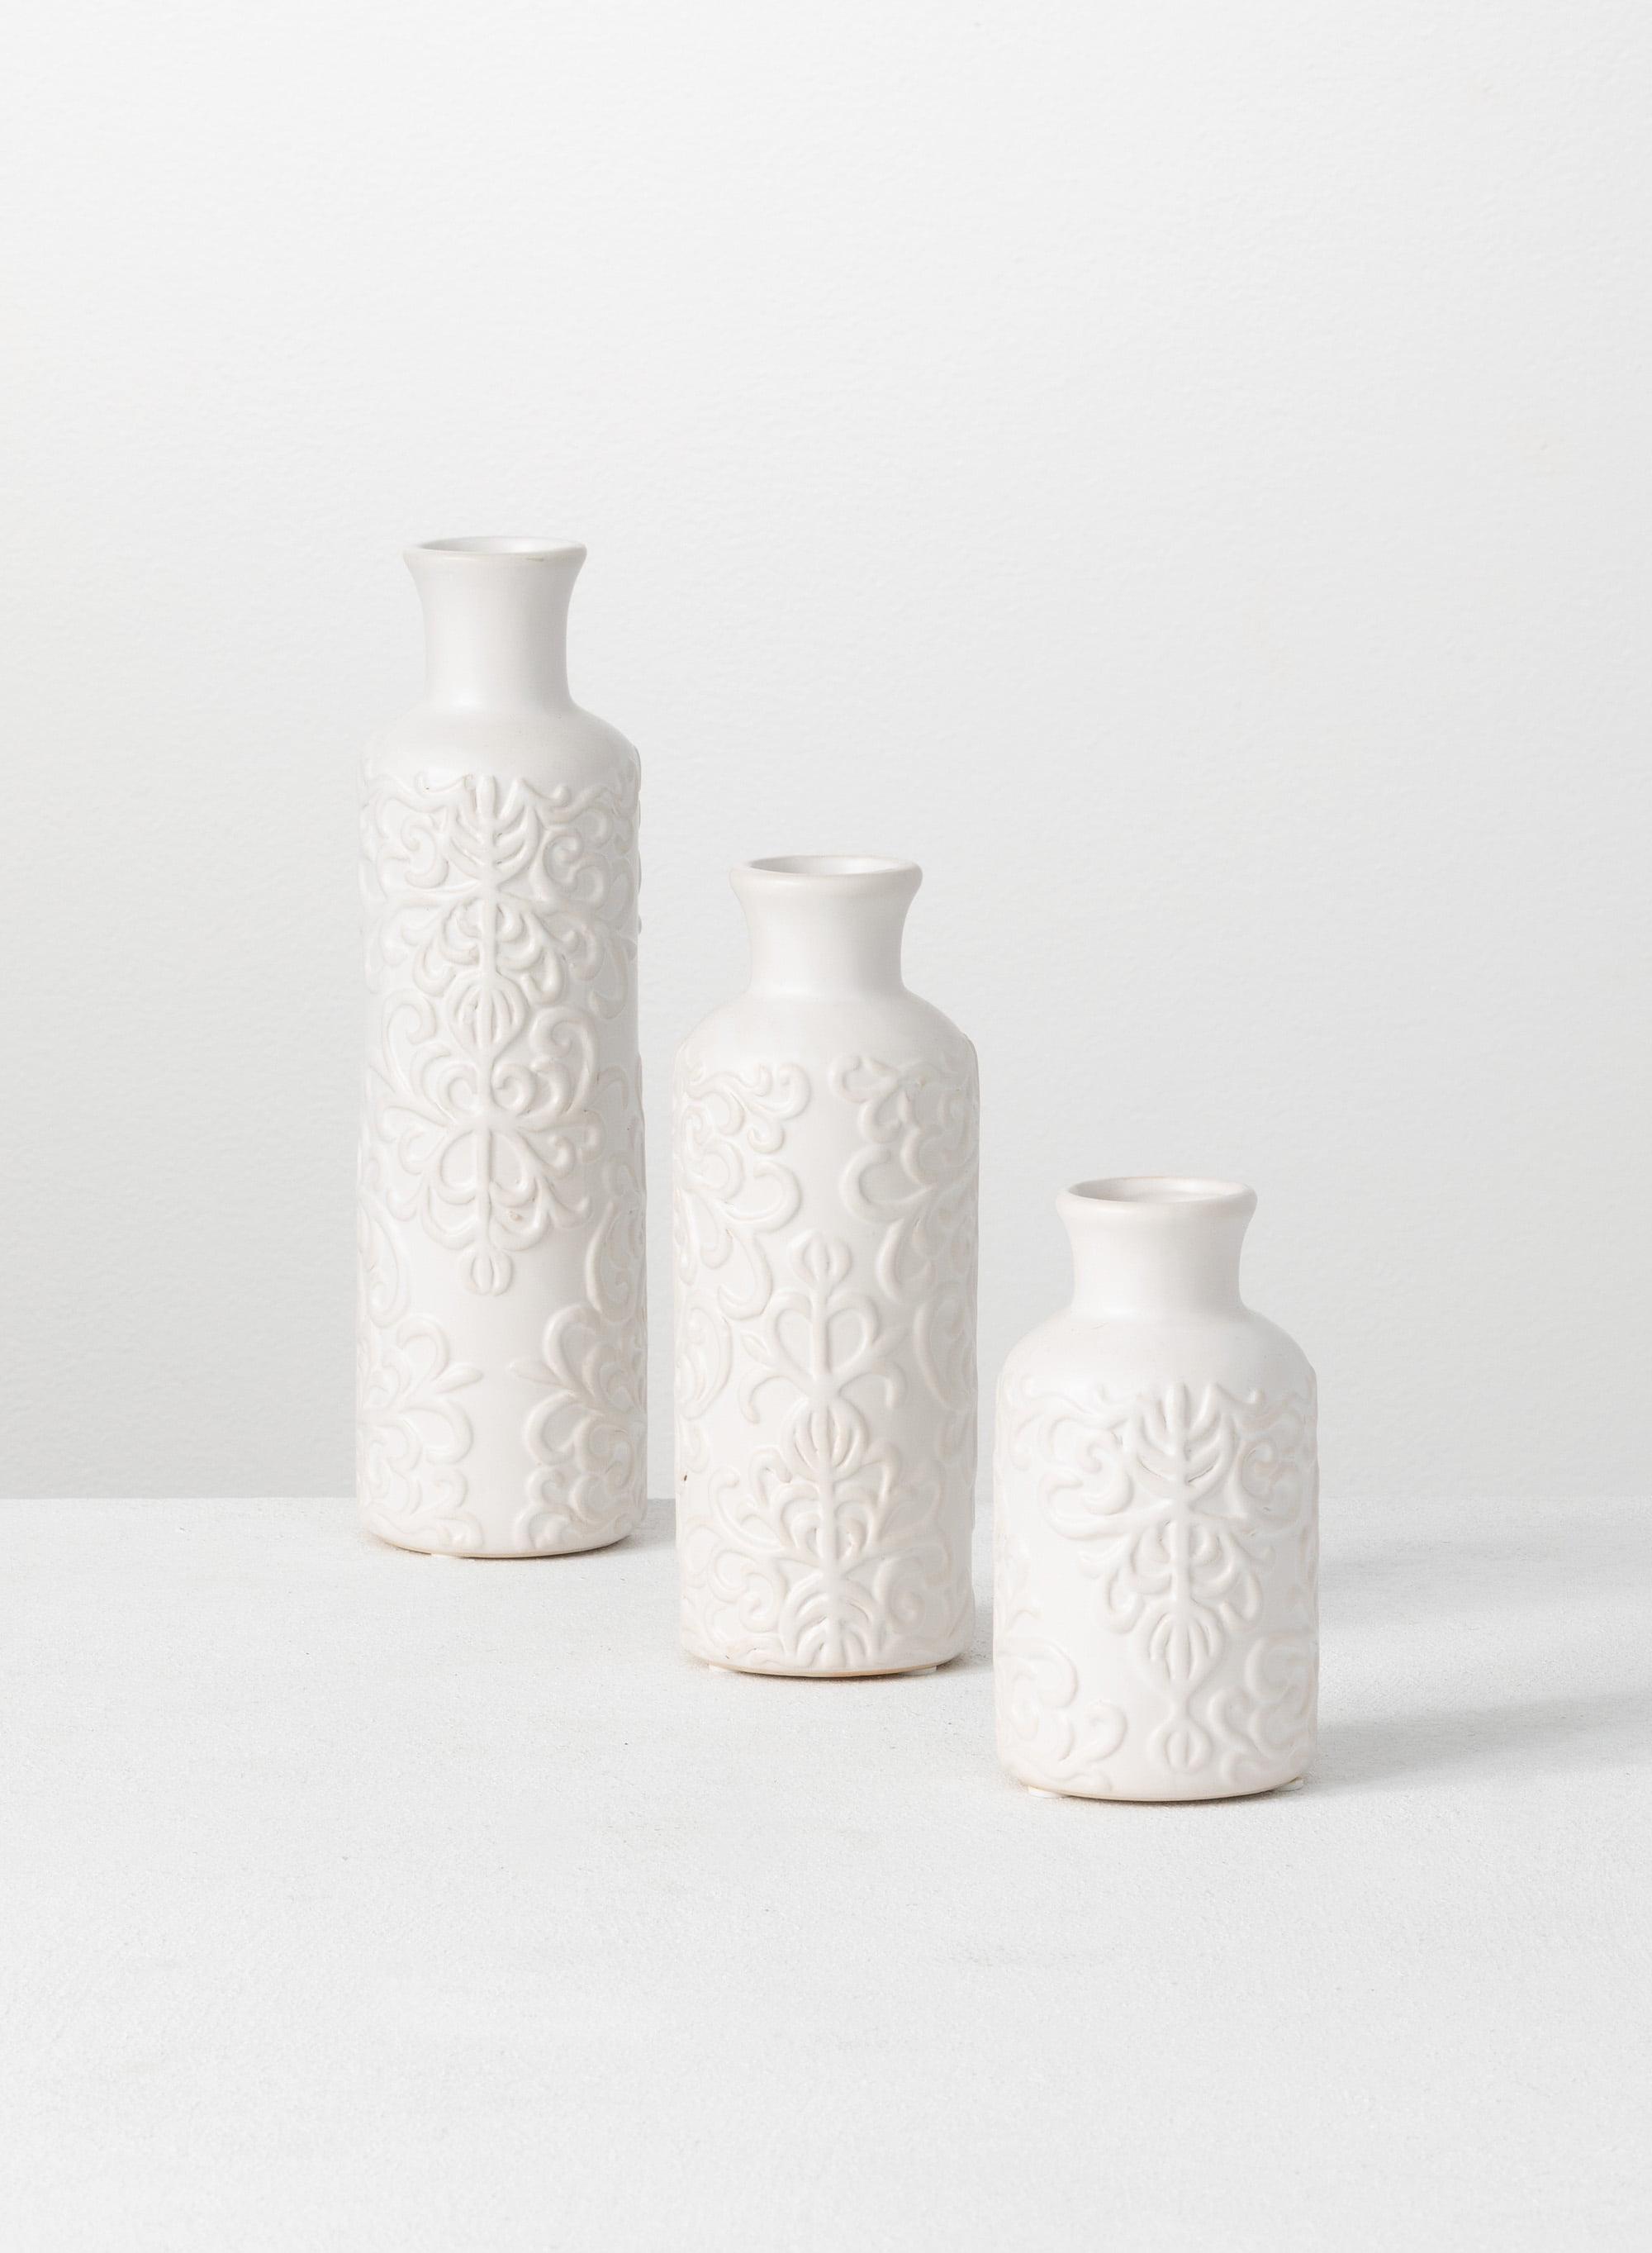 Elegant Trio Ceramic Bud Vases 10", 7.5", & 5.5" - White